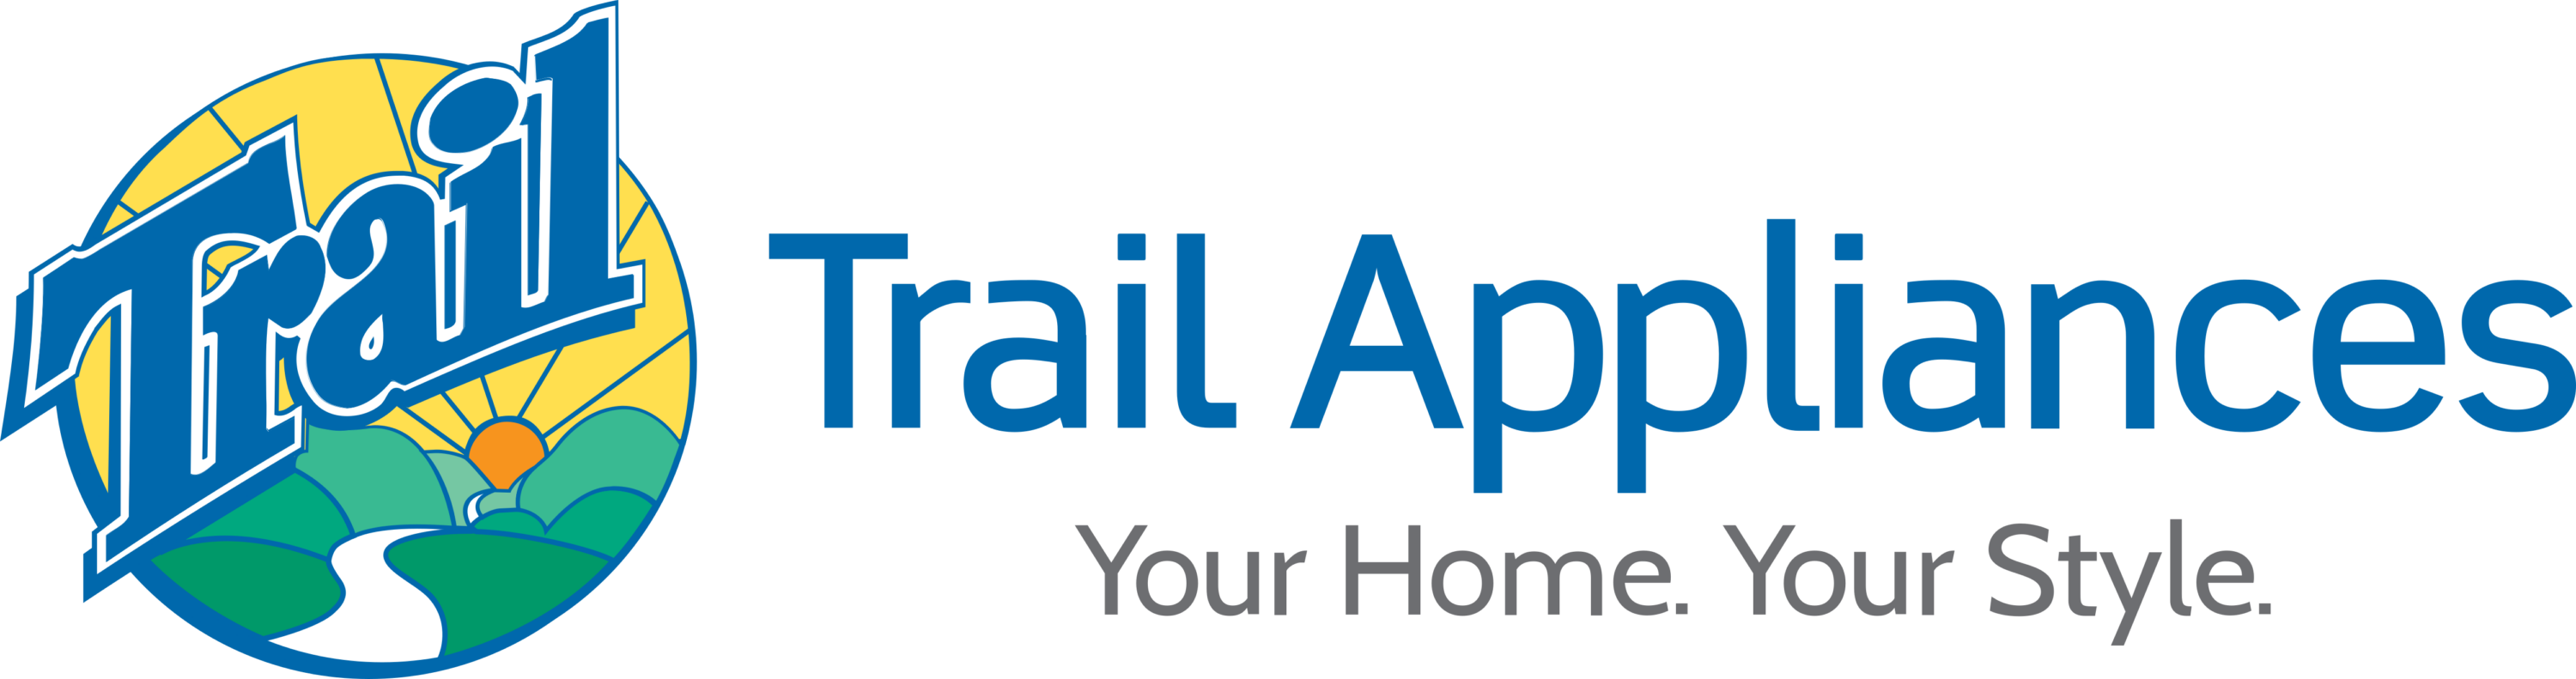 Trail Appliances Logo